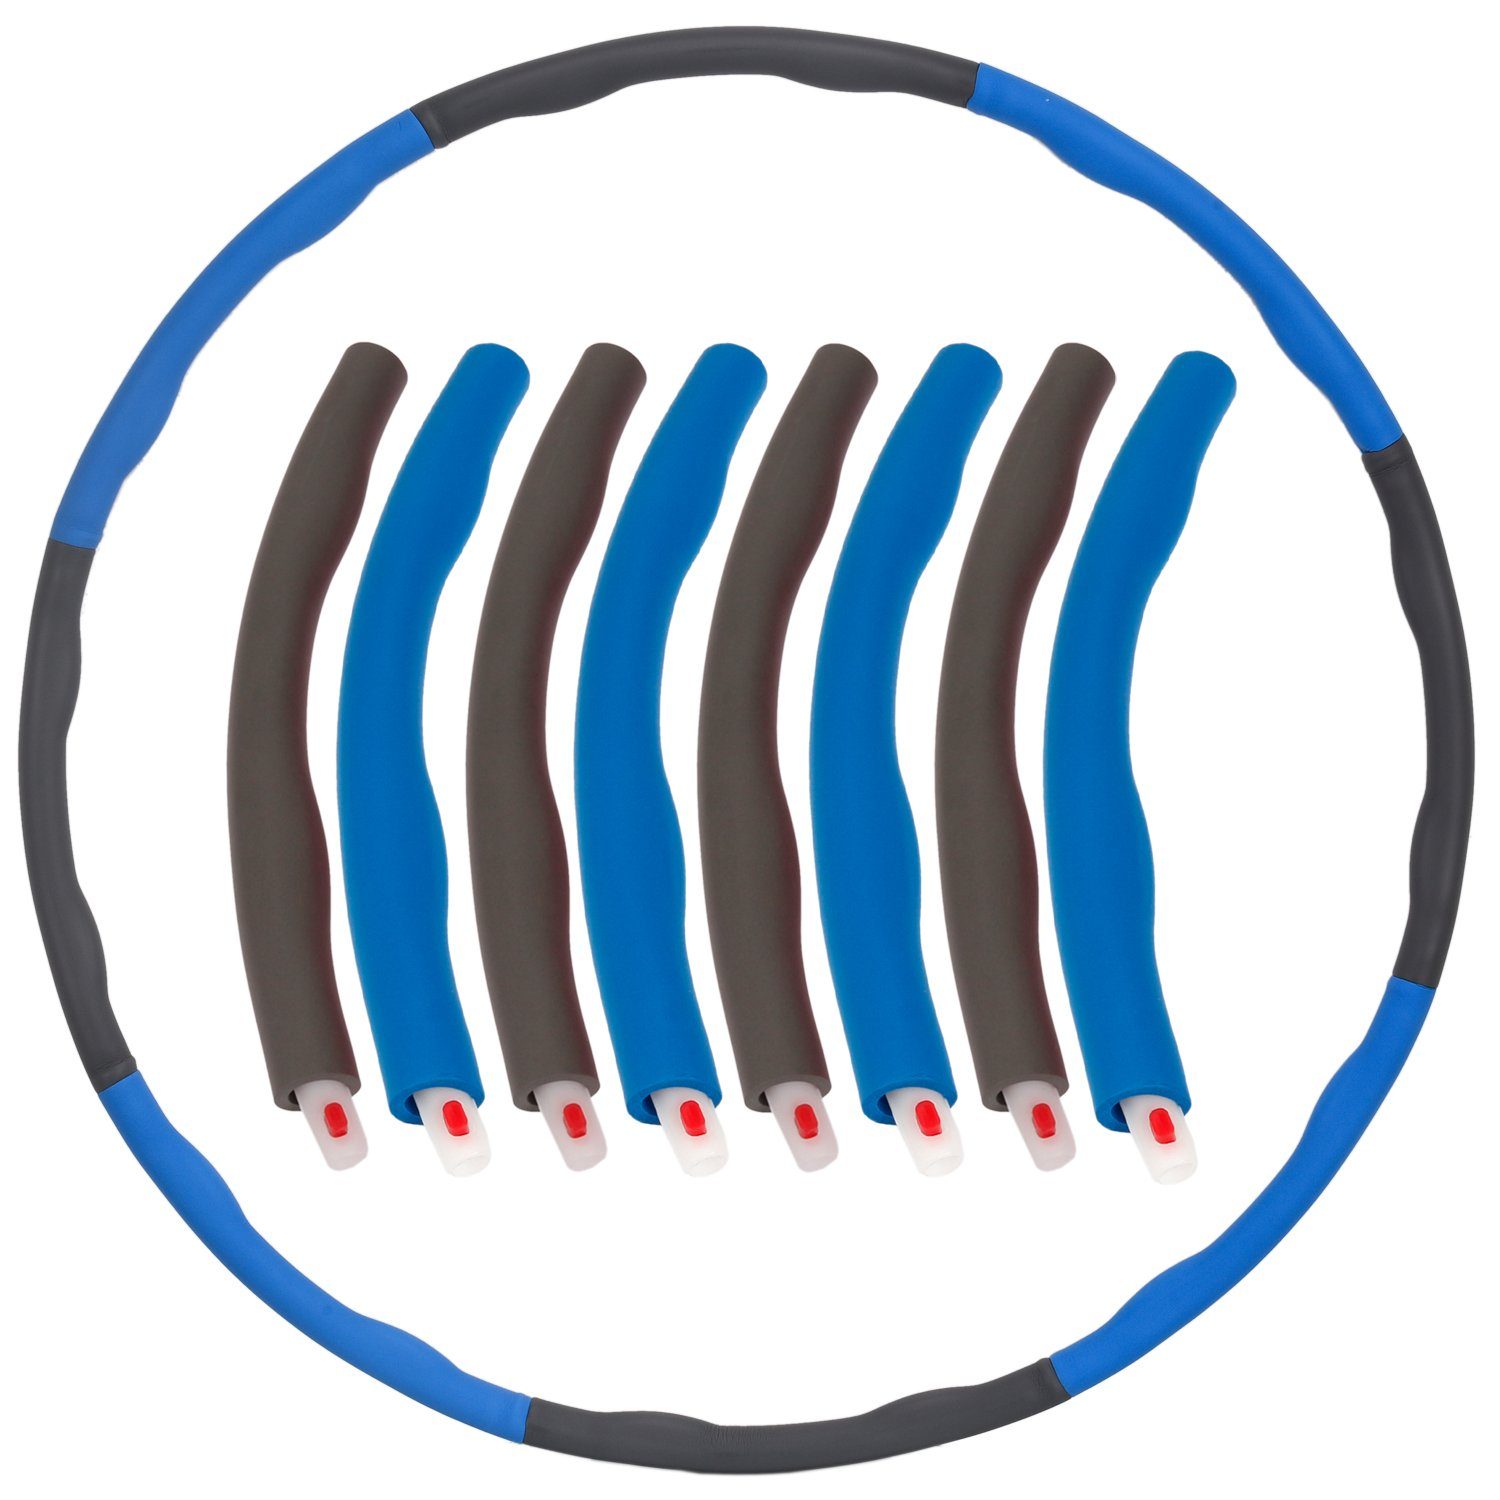 FunTomia Hula-Hoop-Reifen Hula Hoop Reifen Anfänger Abnehmen + Fortgeschrittene der Hulla Bauchmuskeln Hoola Hop zum Erwachsene Trainieren für Hullahub Soft-Elementen, für Training, HUP steckbaren Fitness Blau-Grau zum 6-8 mit